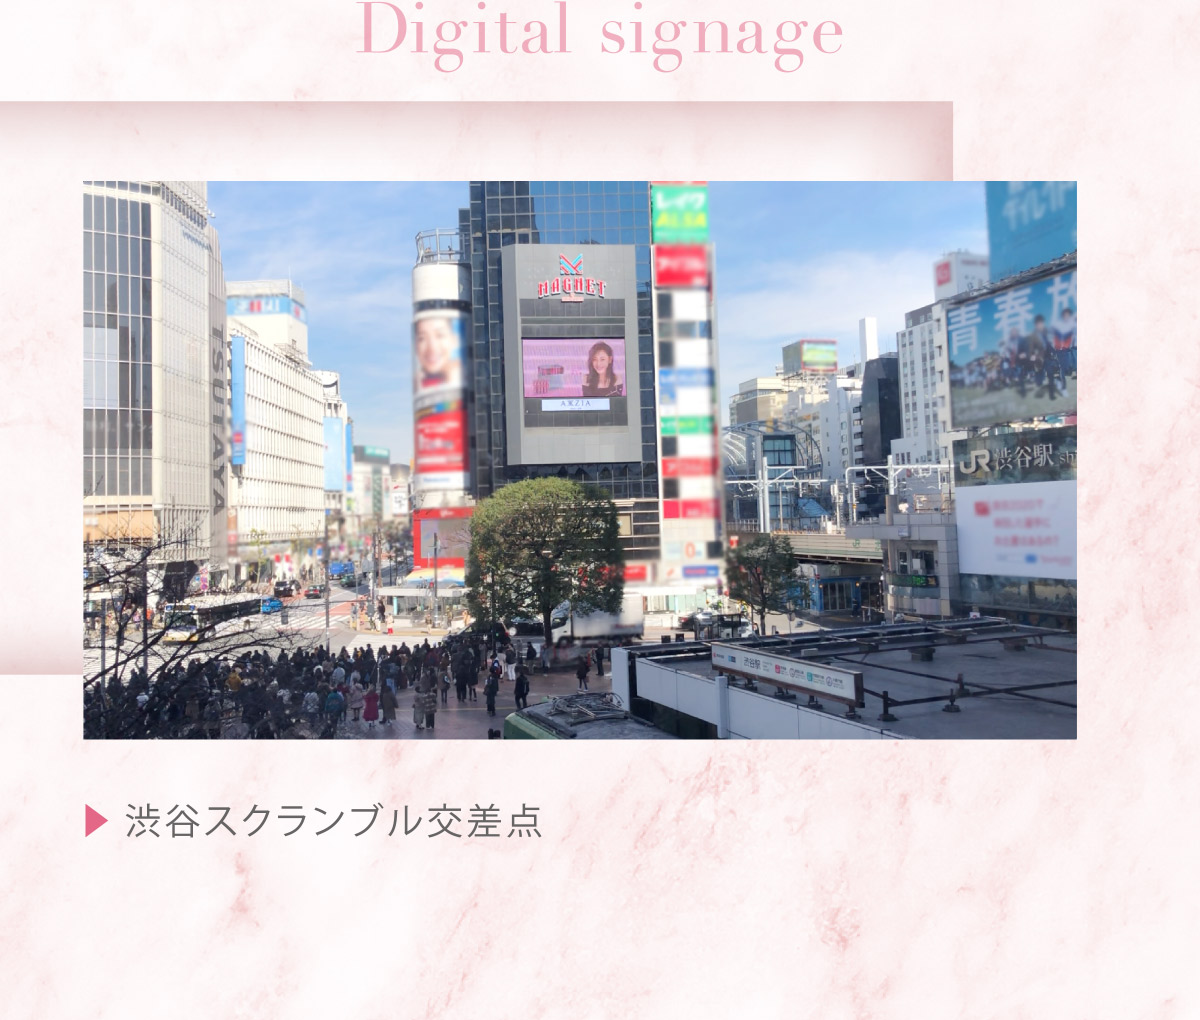 【Digital signage】渋谷スクランブル交差点